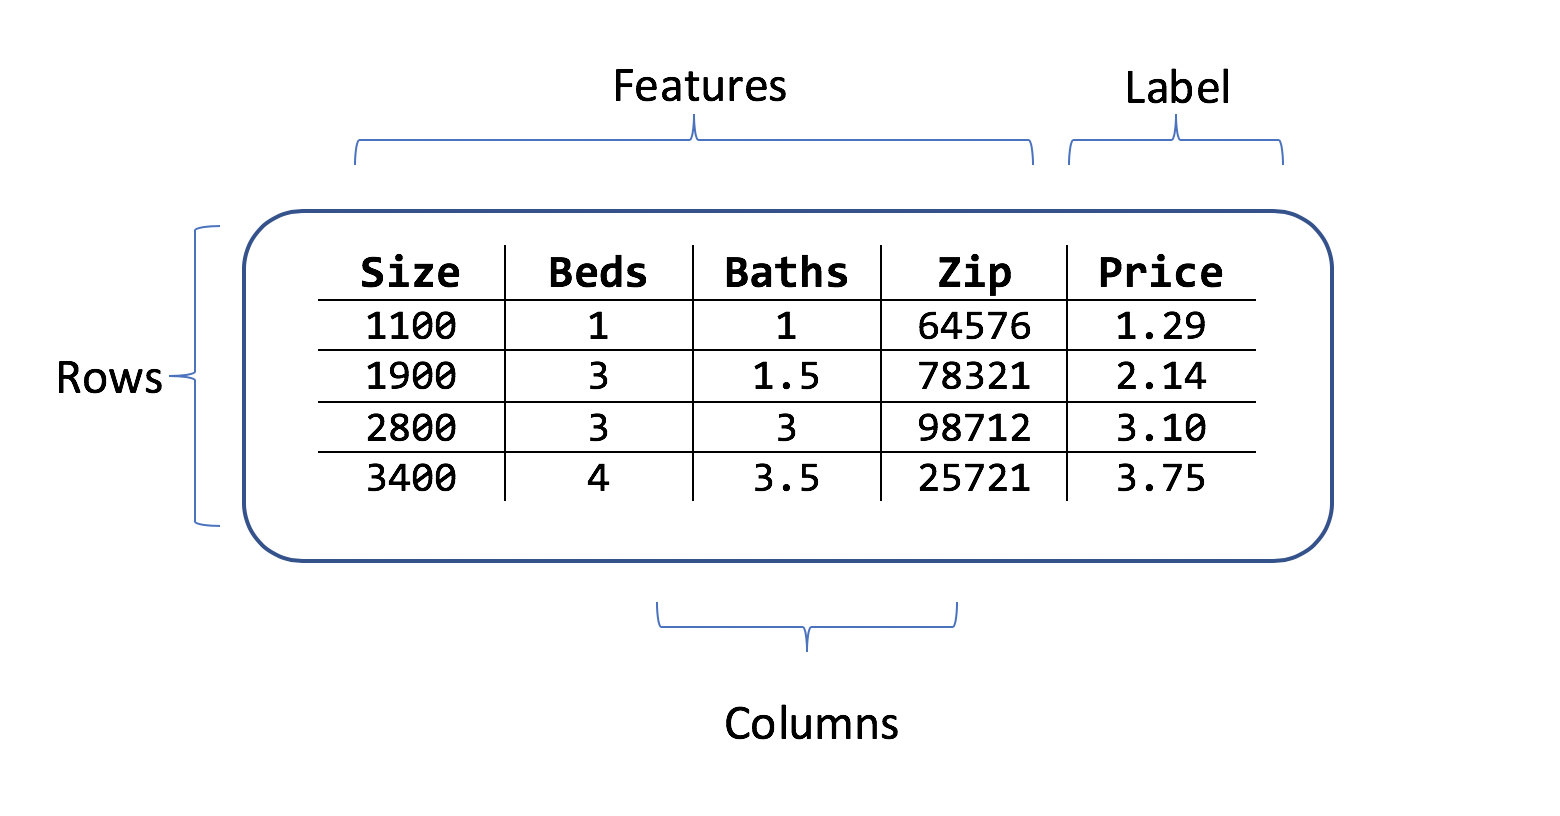 A házárak adatait tartalmazó sorok és oszlopok táblázata a szobák méretéből és az árcímkéből álló funkciókkal